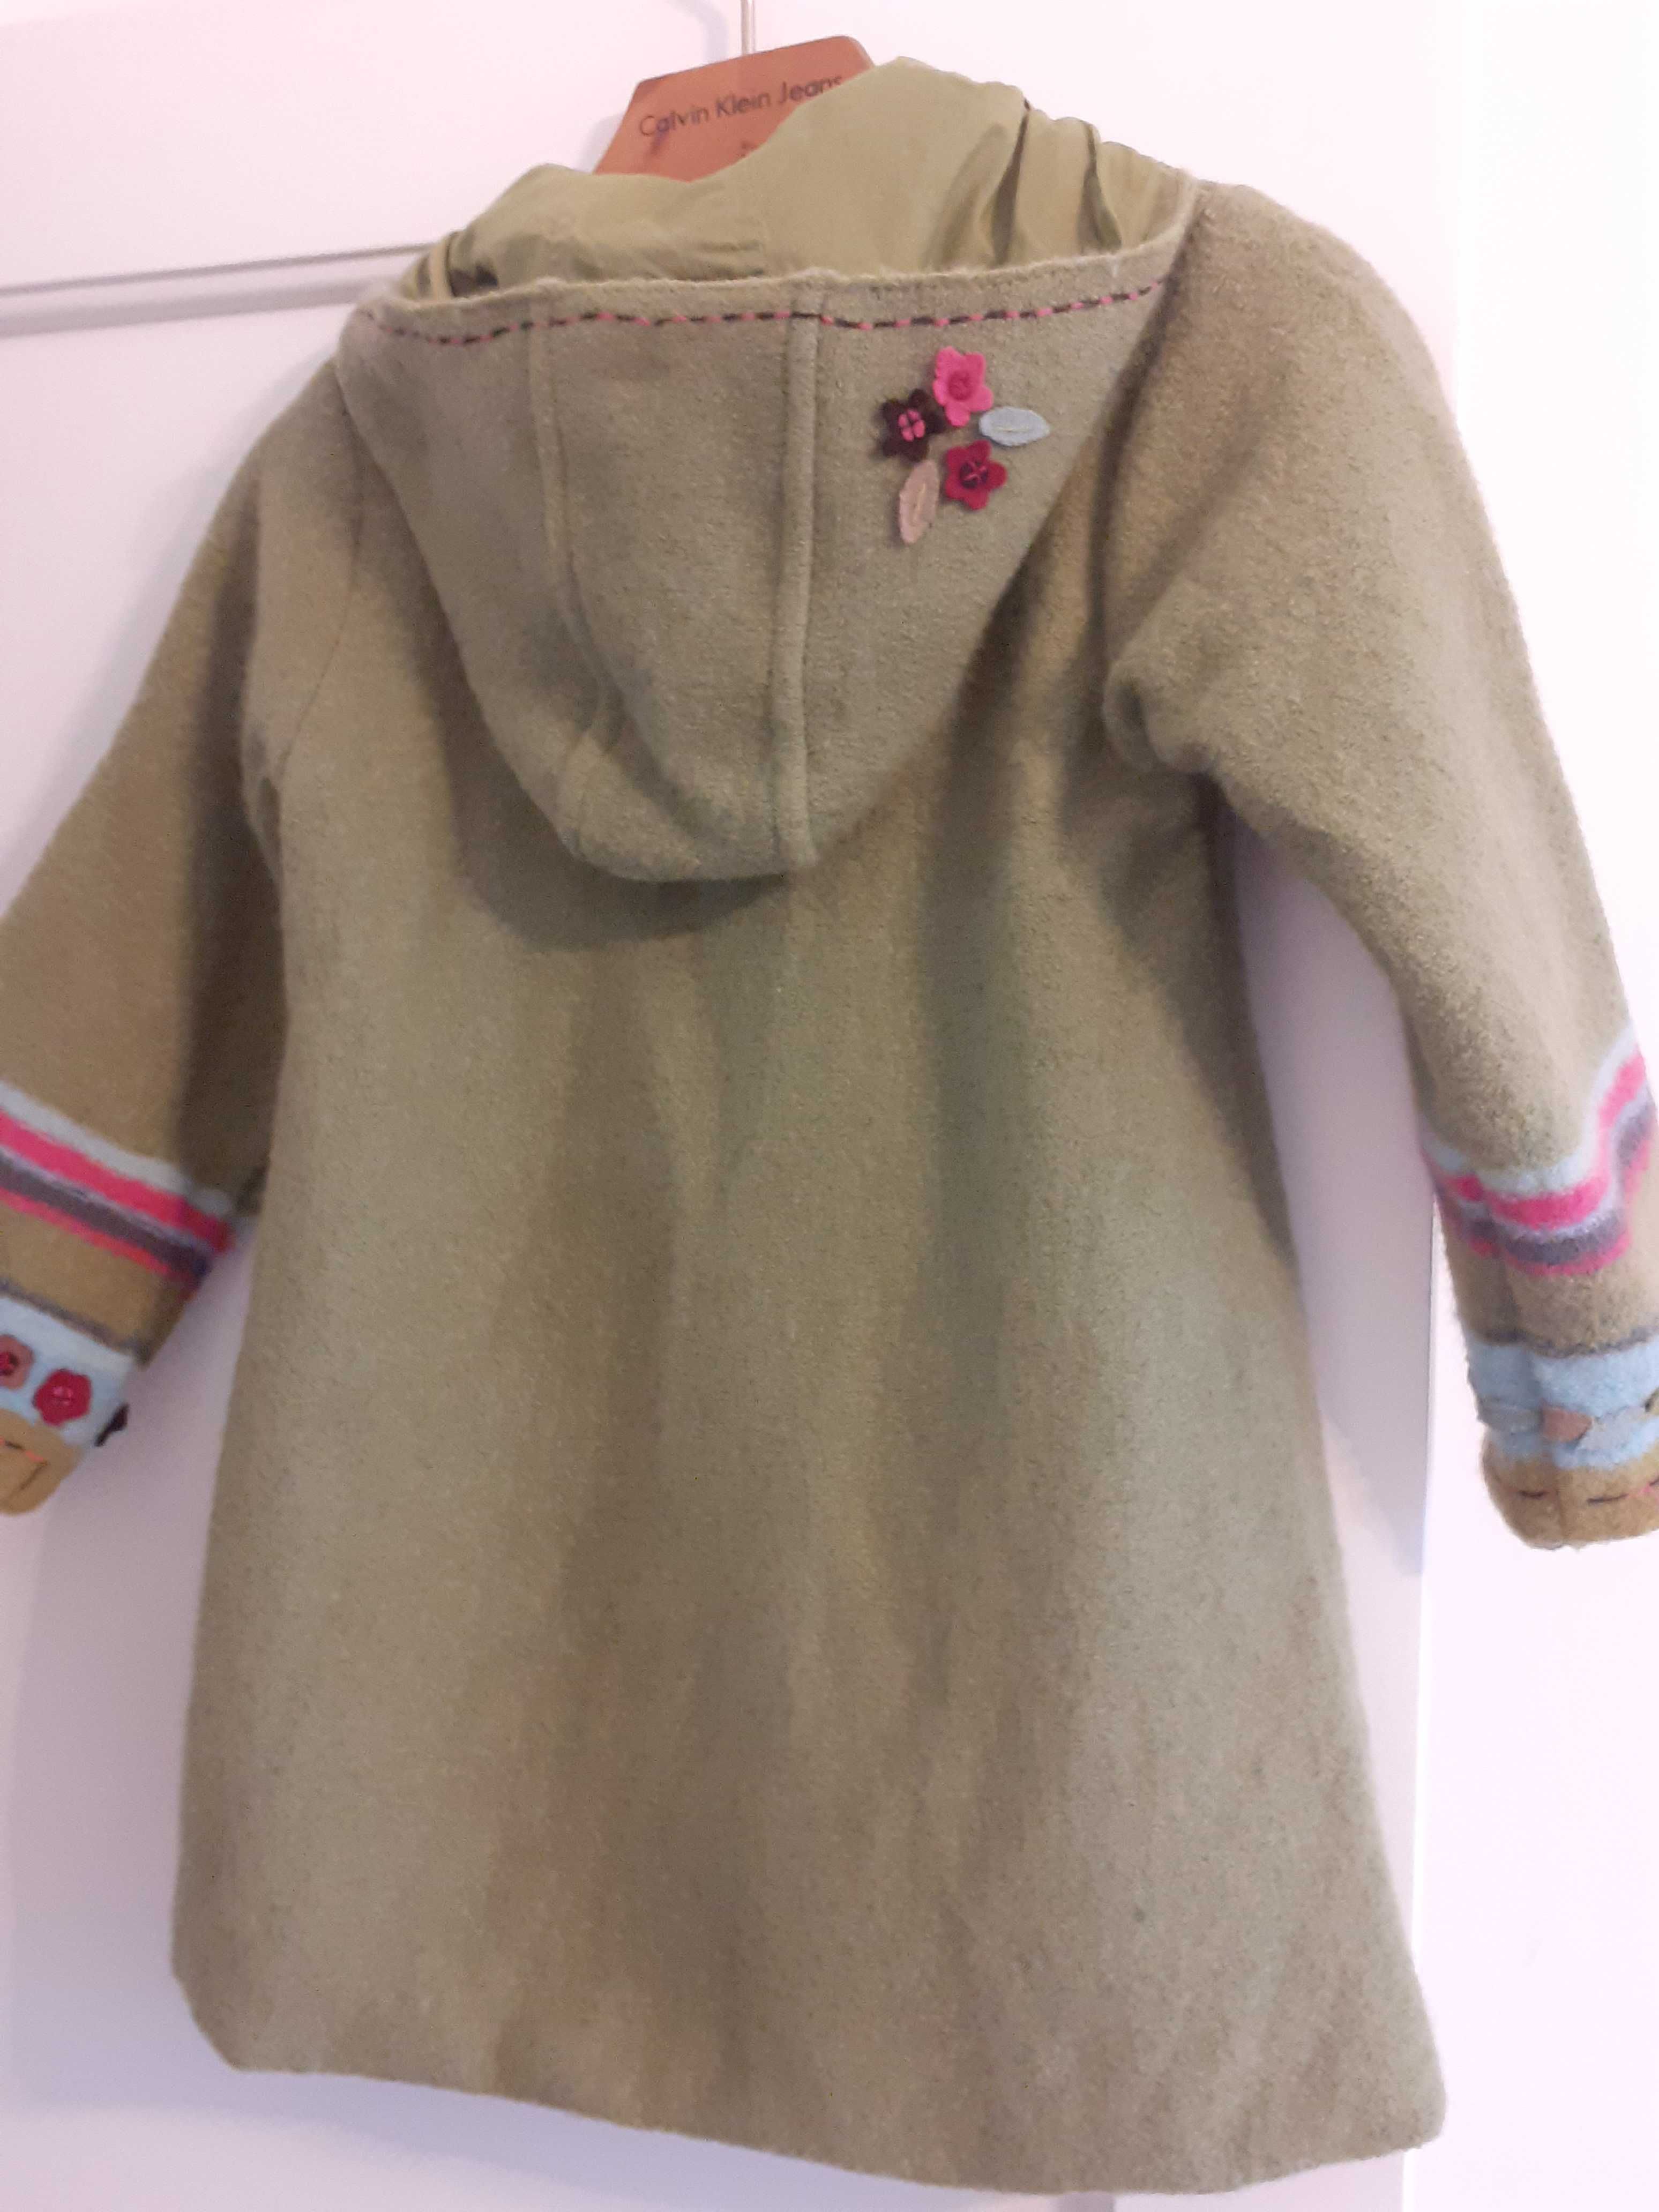 Palton lana copii, captusit, Dpam, 5 ani